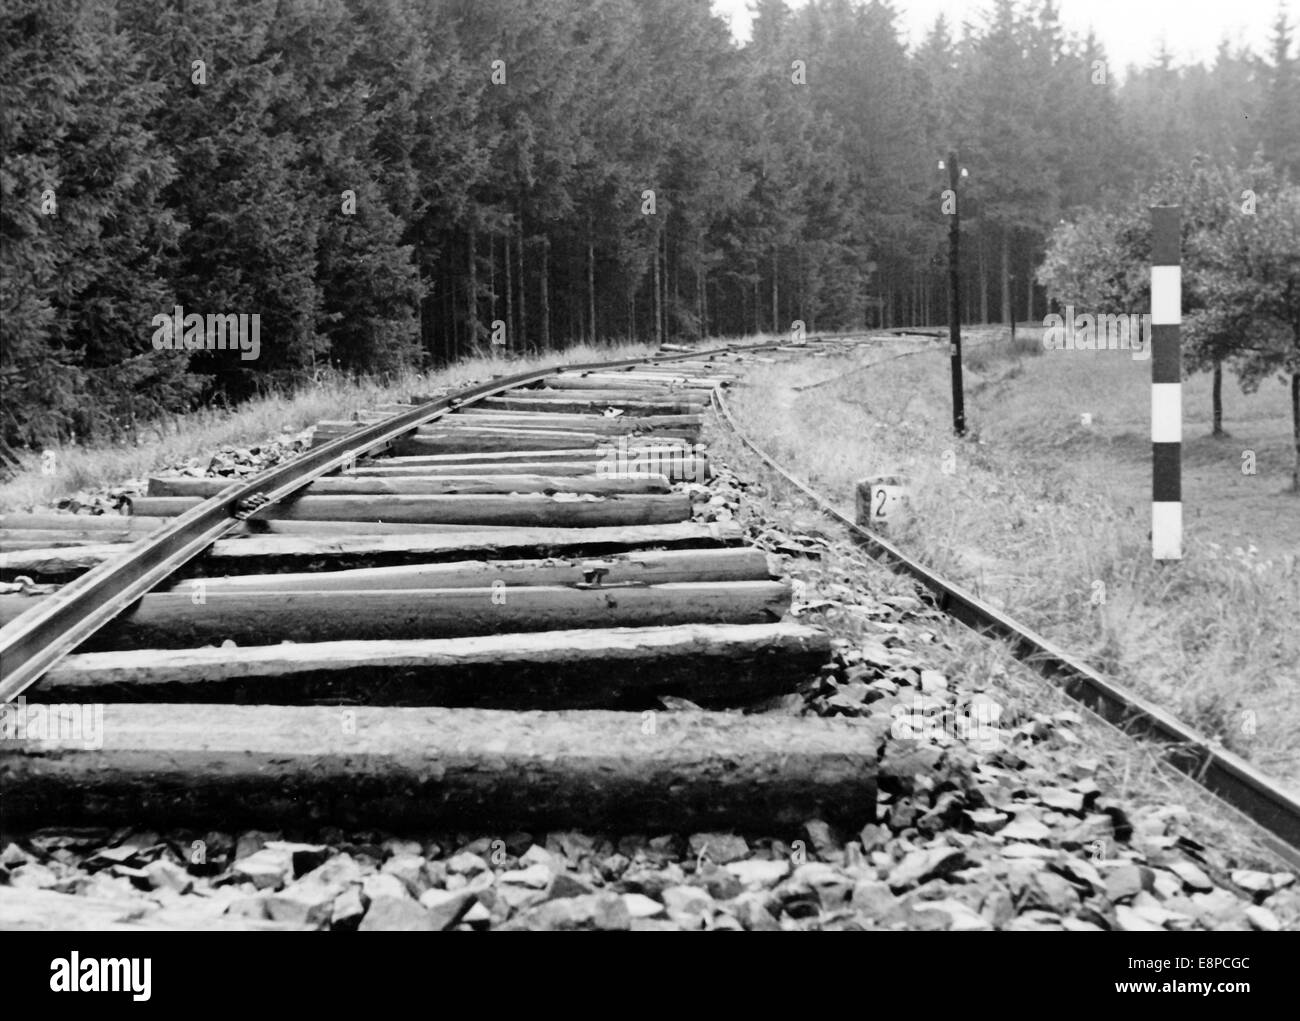 Le tableau de la propagande nazie montre (pendant le retrait des Tchèques ?) Les voies ferrées ont été détruites après l'occupation allemande des Sudètes en octobre 1938. Fotoarchiv für Zeitgeschichtee - PAS DE SERVICE DE FIL Banque D'Images